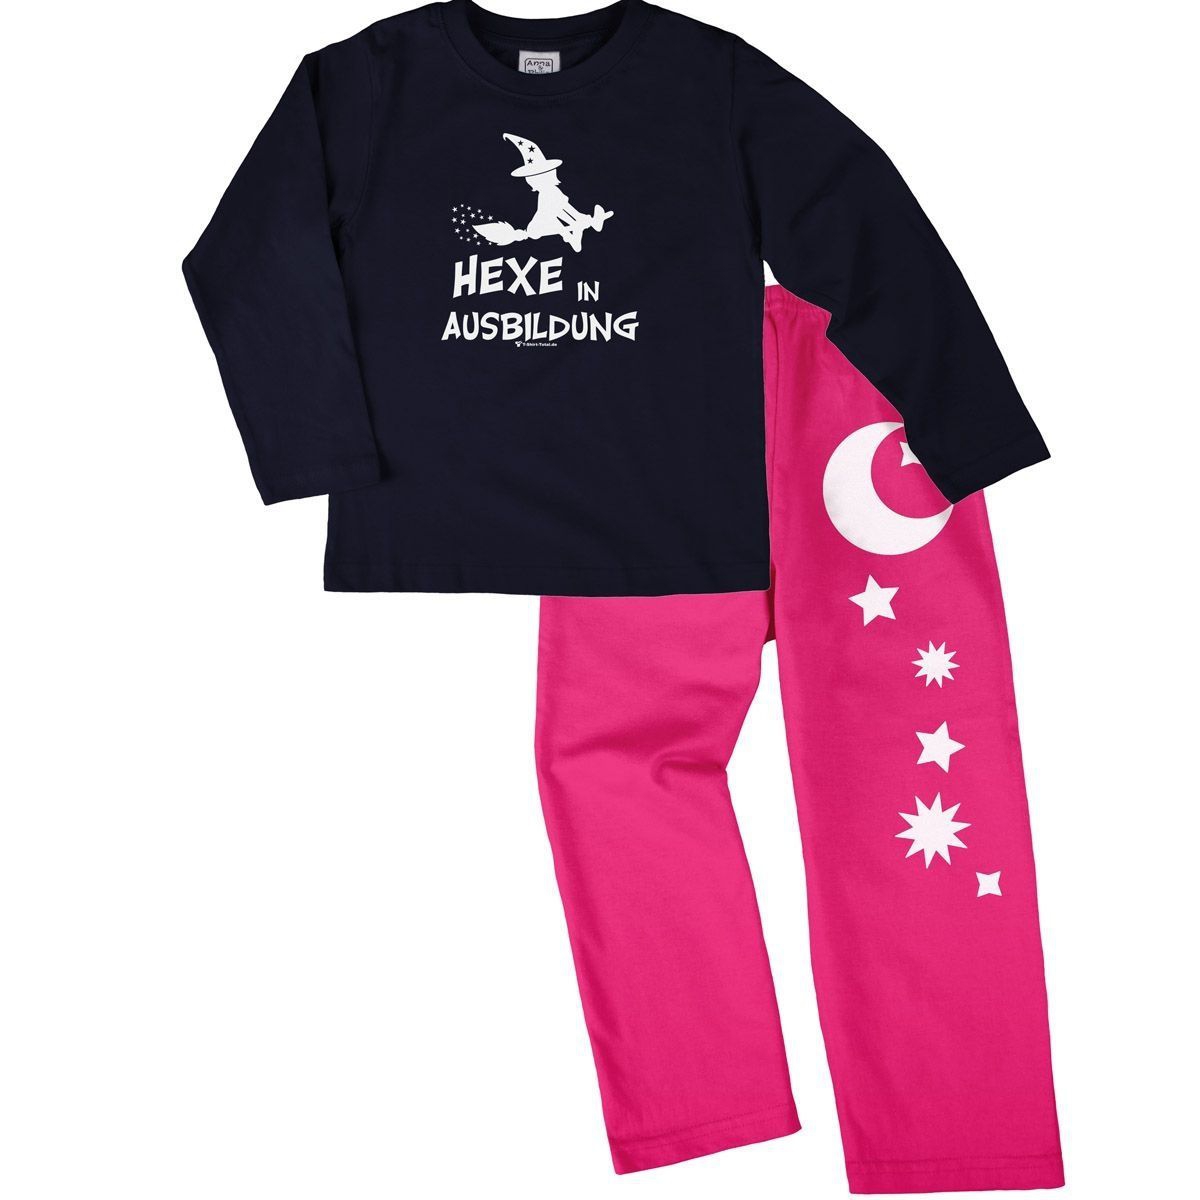 Hexe in Ausbildung Pyjama Set navy / pink 68 / 74